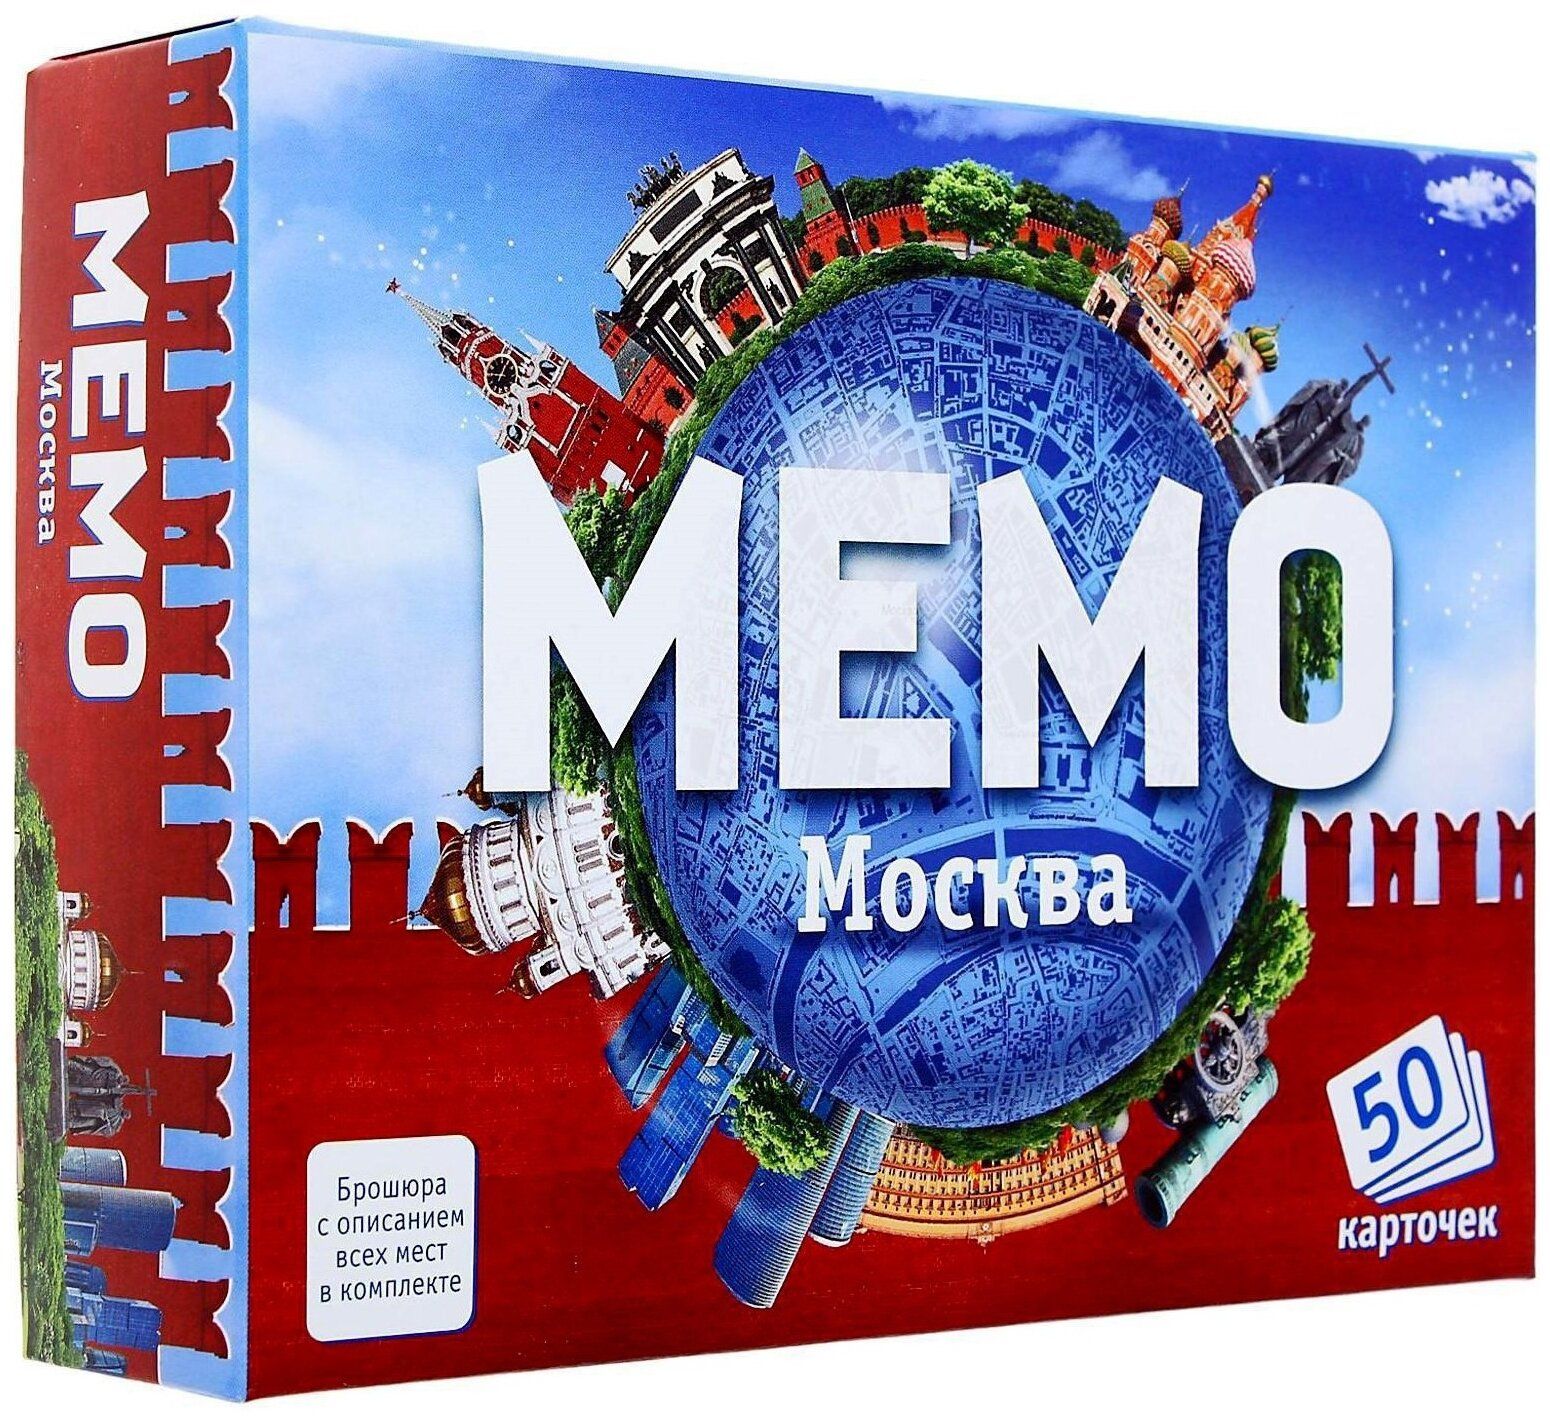 Мемо Москва арт.7205 (50 карточек) /48 мемо меганабор все выпущенные мемо 14 наборов нескучные игры